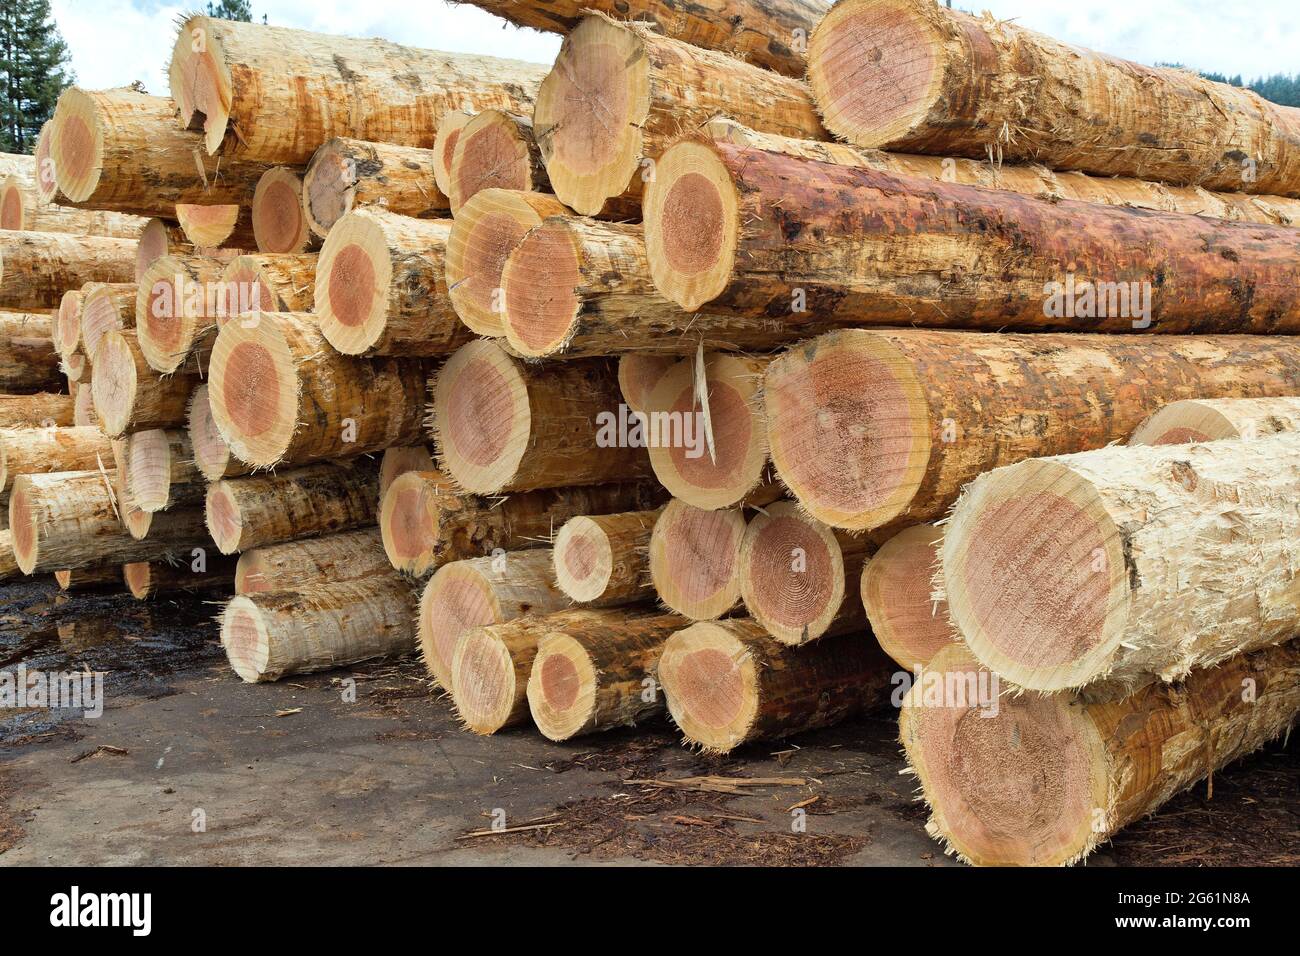 Troncos de pino Douglas 'Pseudotsuga menziesii' cosechados y desmotados en la fábrica de madera. Foto de stock